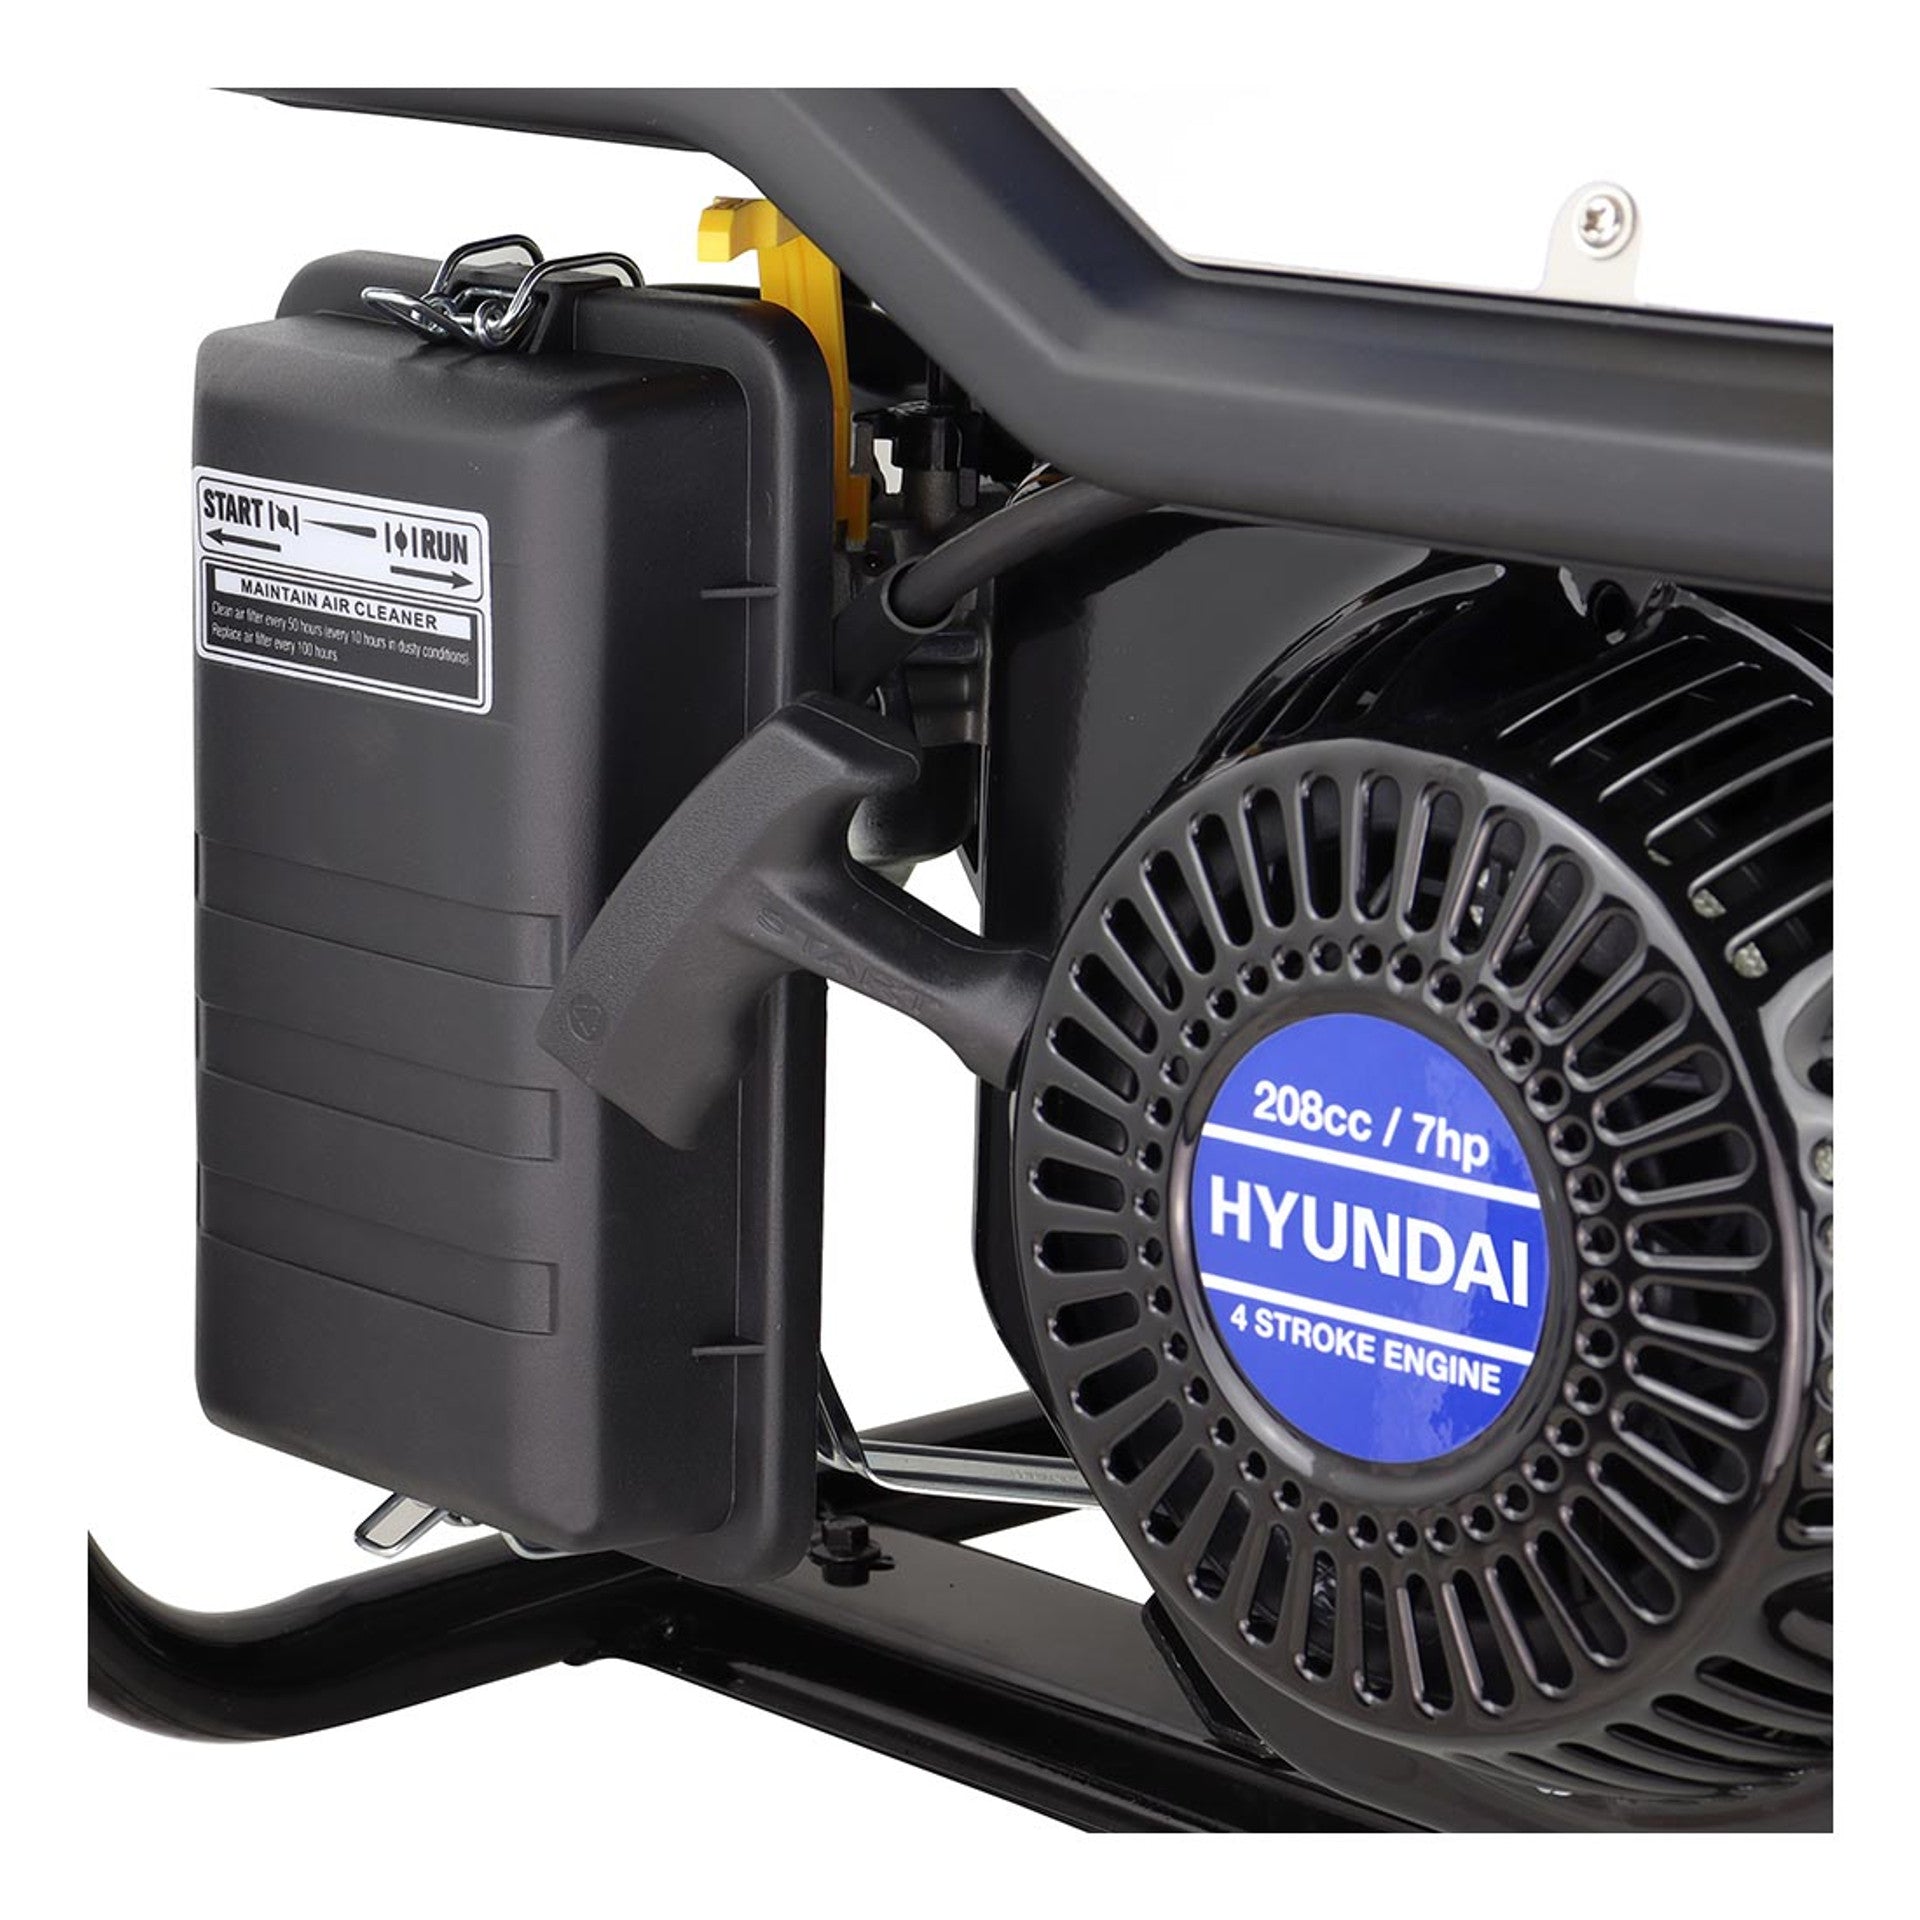 Hyundai Petrol Generator 3.2kW / 4kVa HY3800L-2